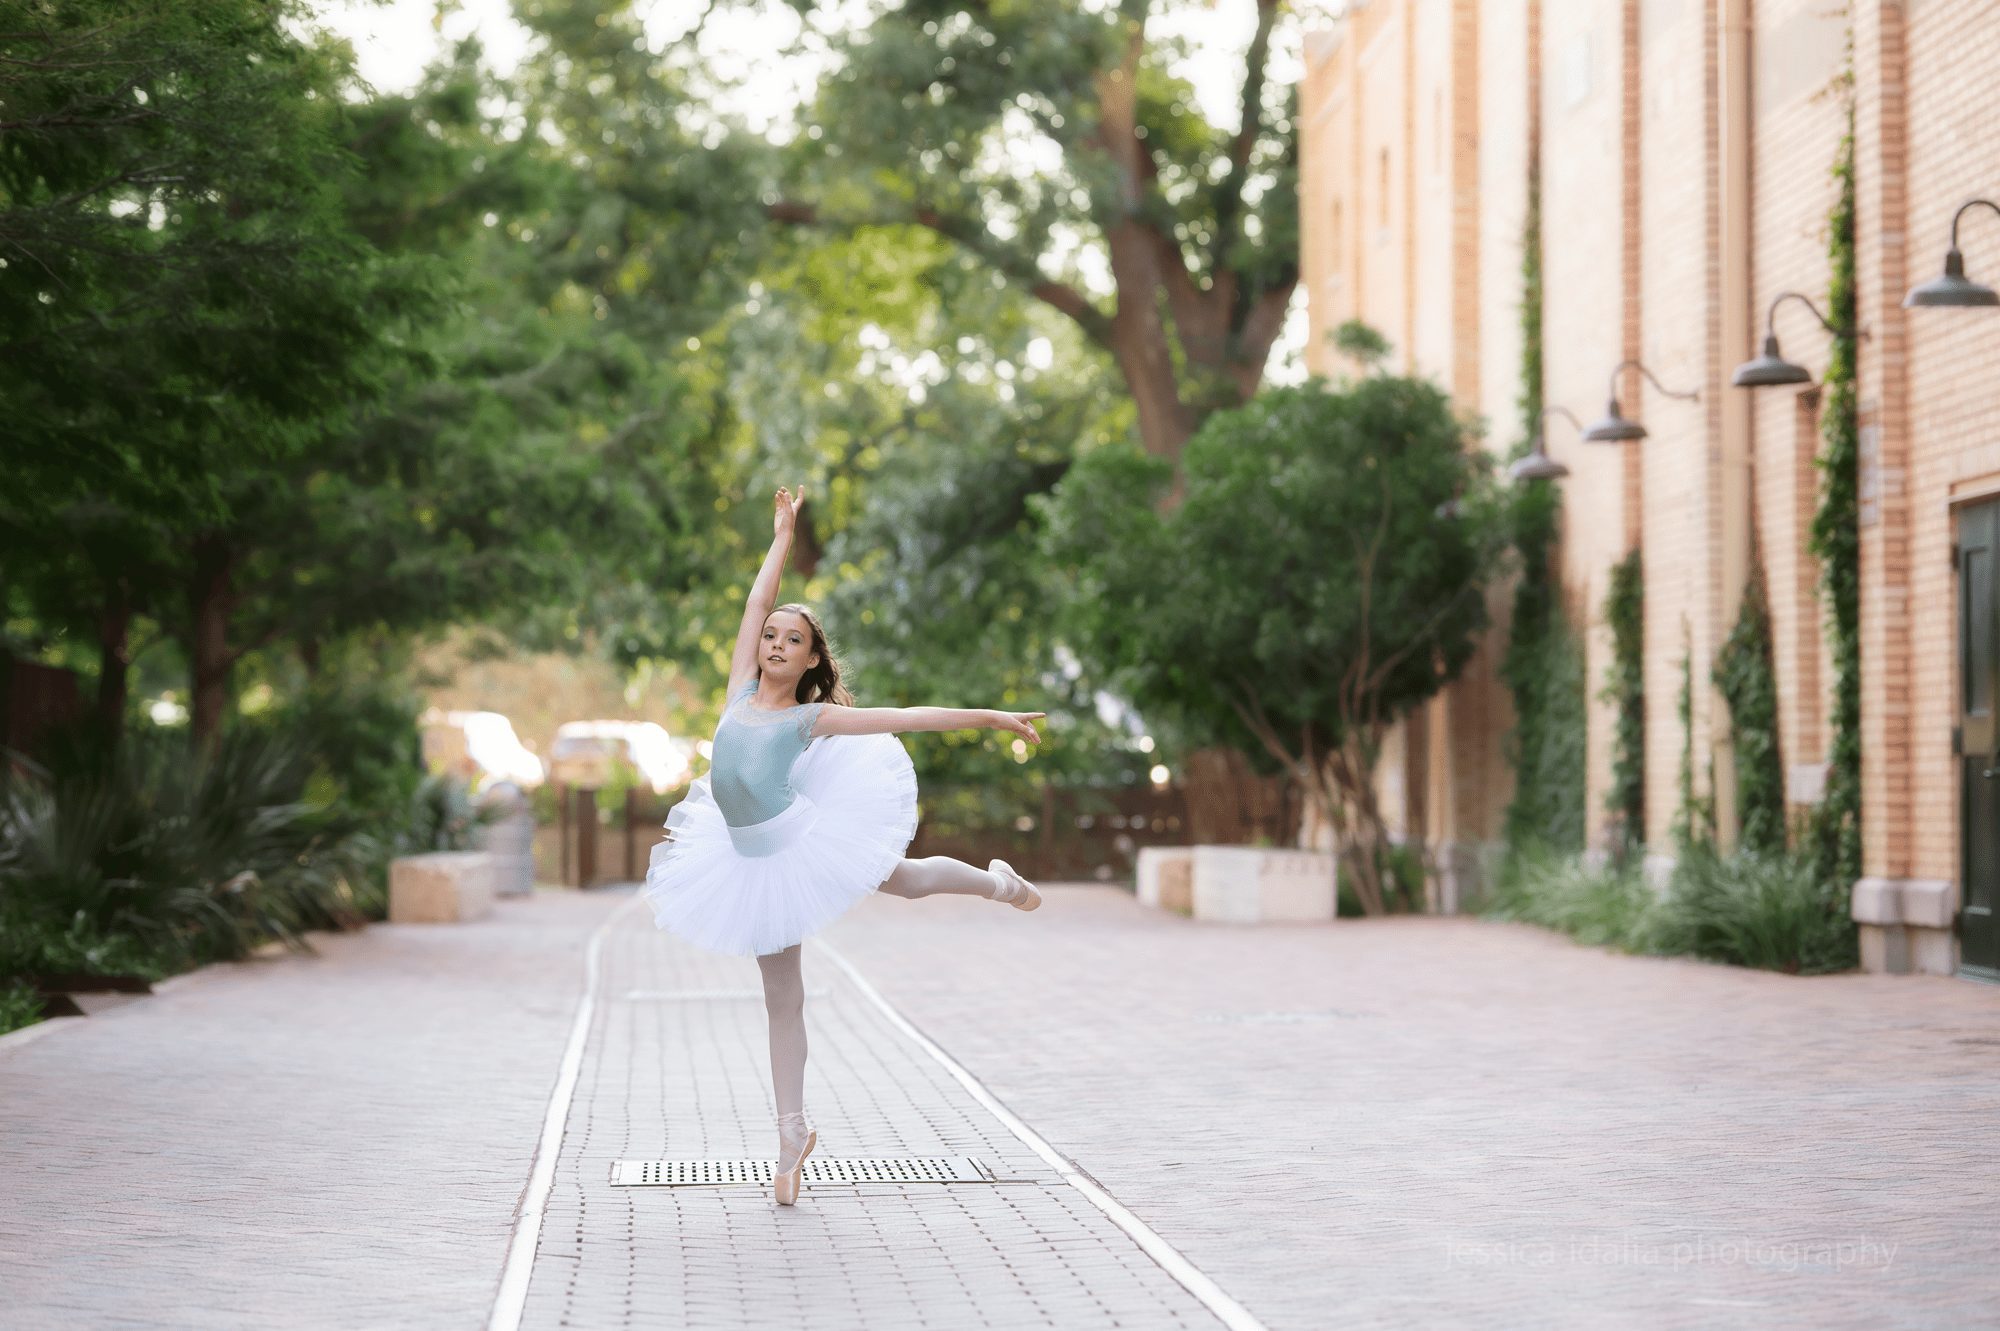 Ballerina portrait dancing in front of building